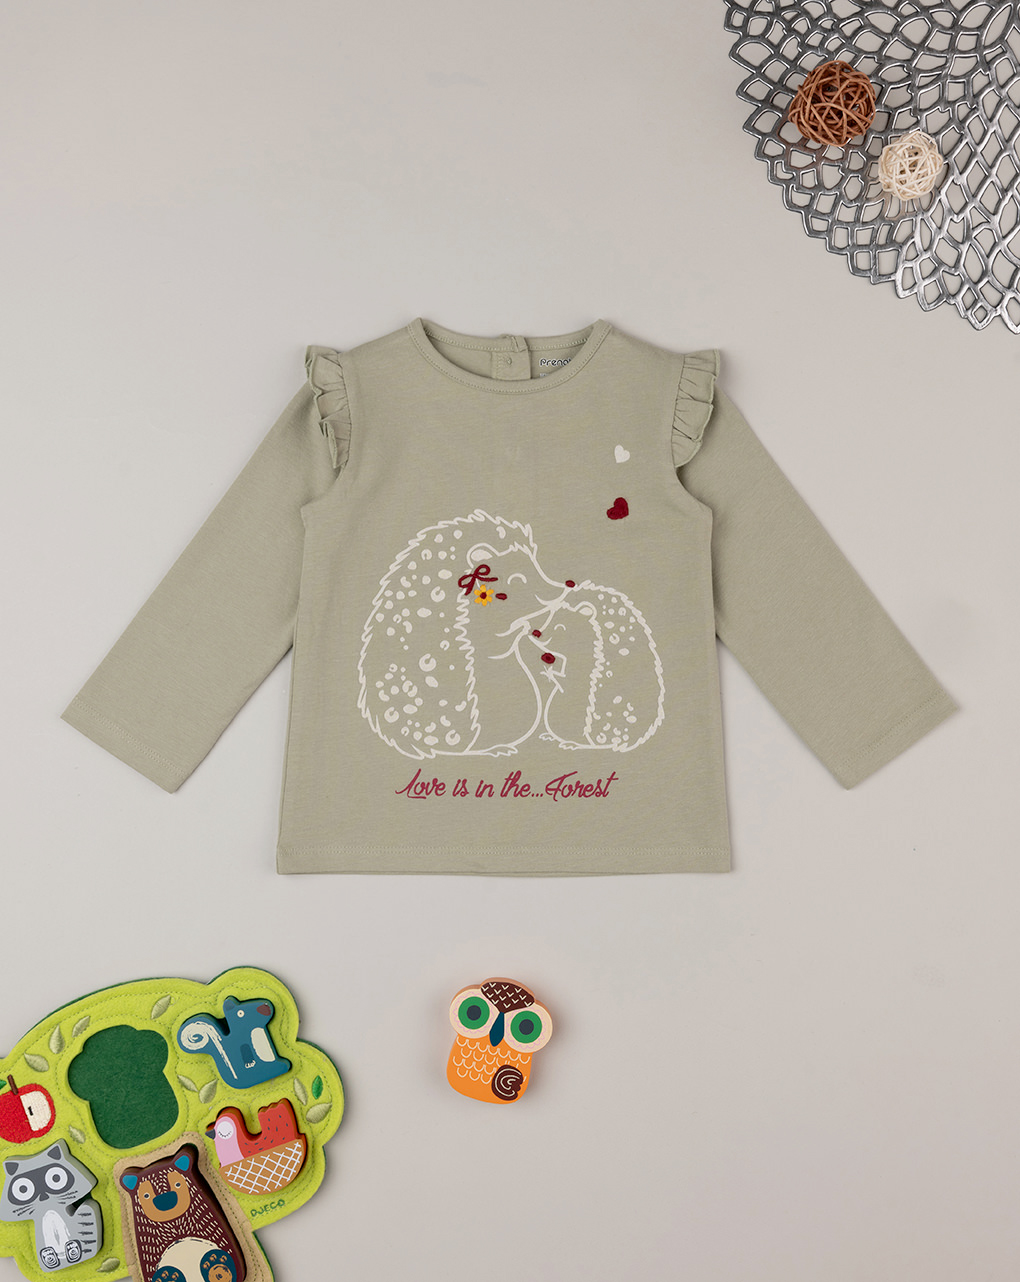 Camiseta "ricci" de manga larga para niña - Prénatal